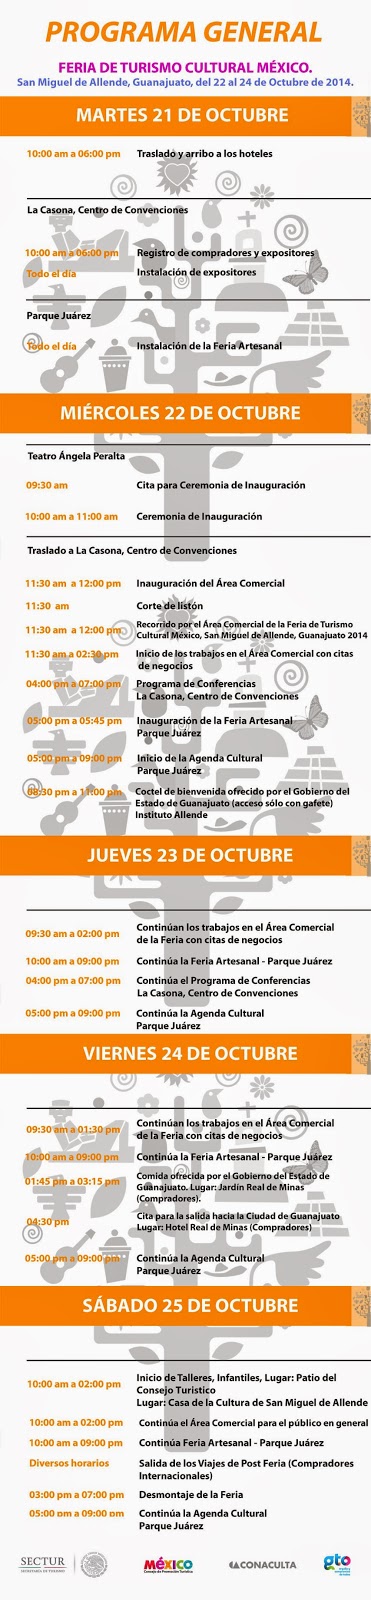 Feria de turismo cultural San Miguel de Allende 2014